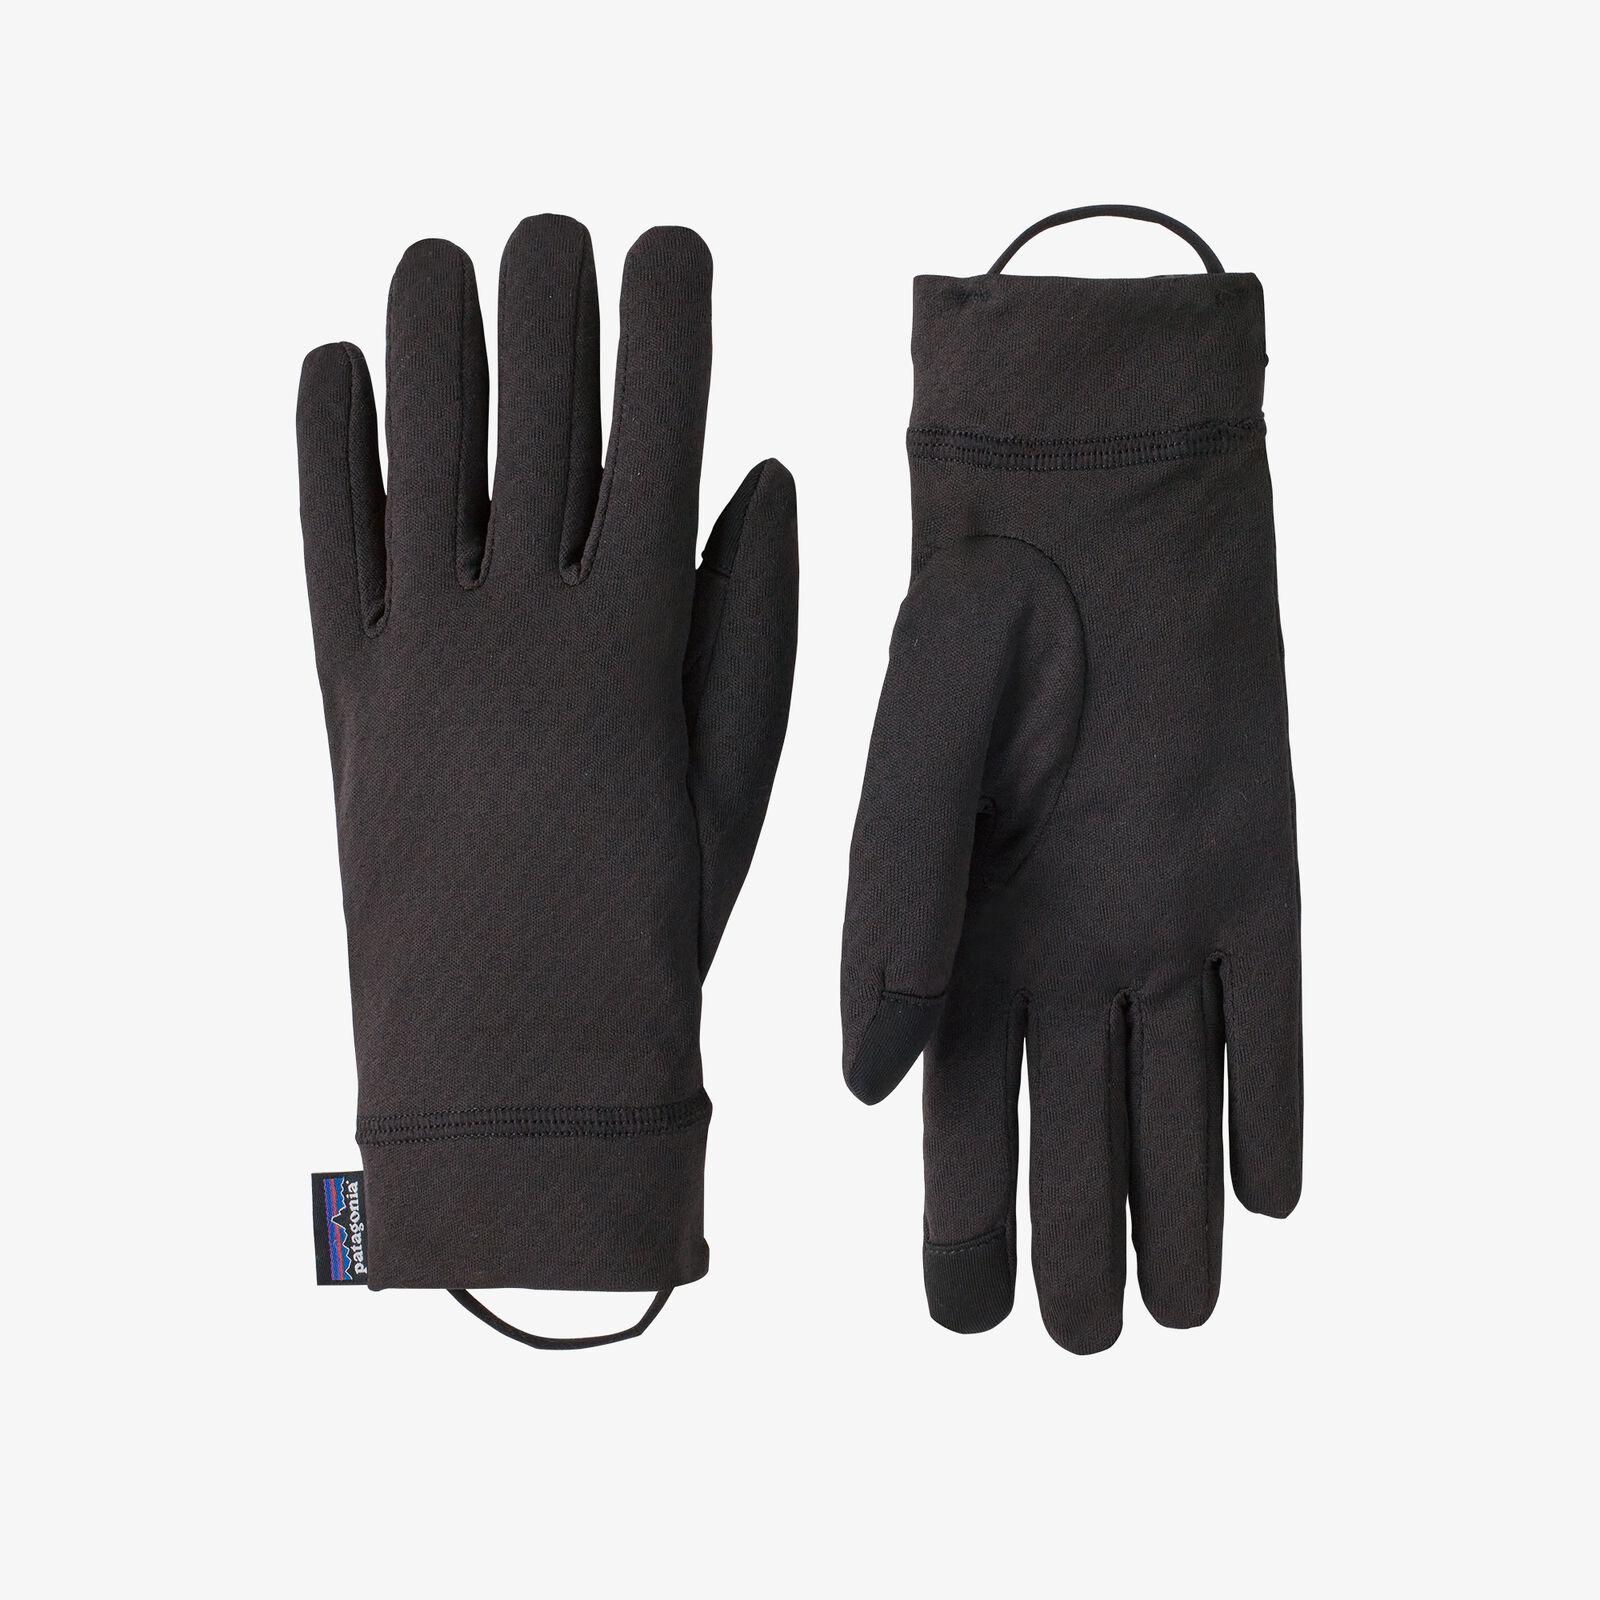 キャプリーン ミッドウェイト ライナー グローブ パタゴニア公式サイト Cap Mw Liner Gloves